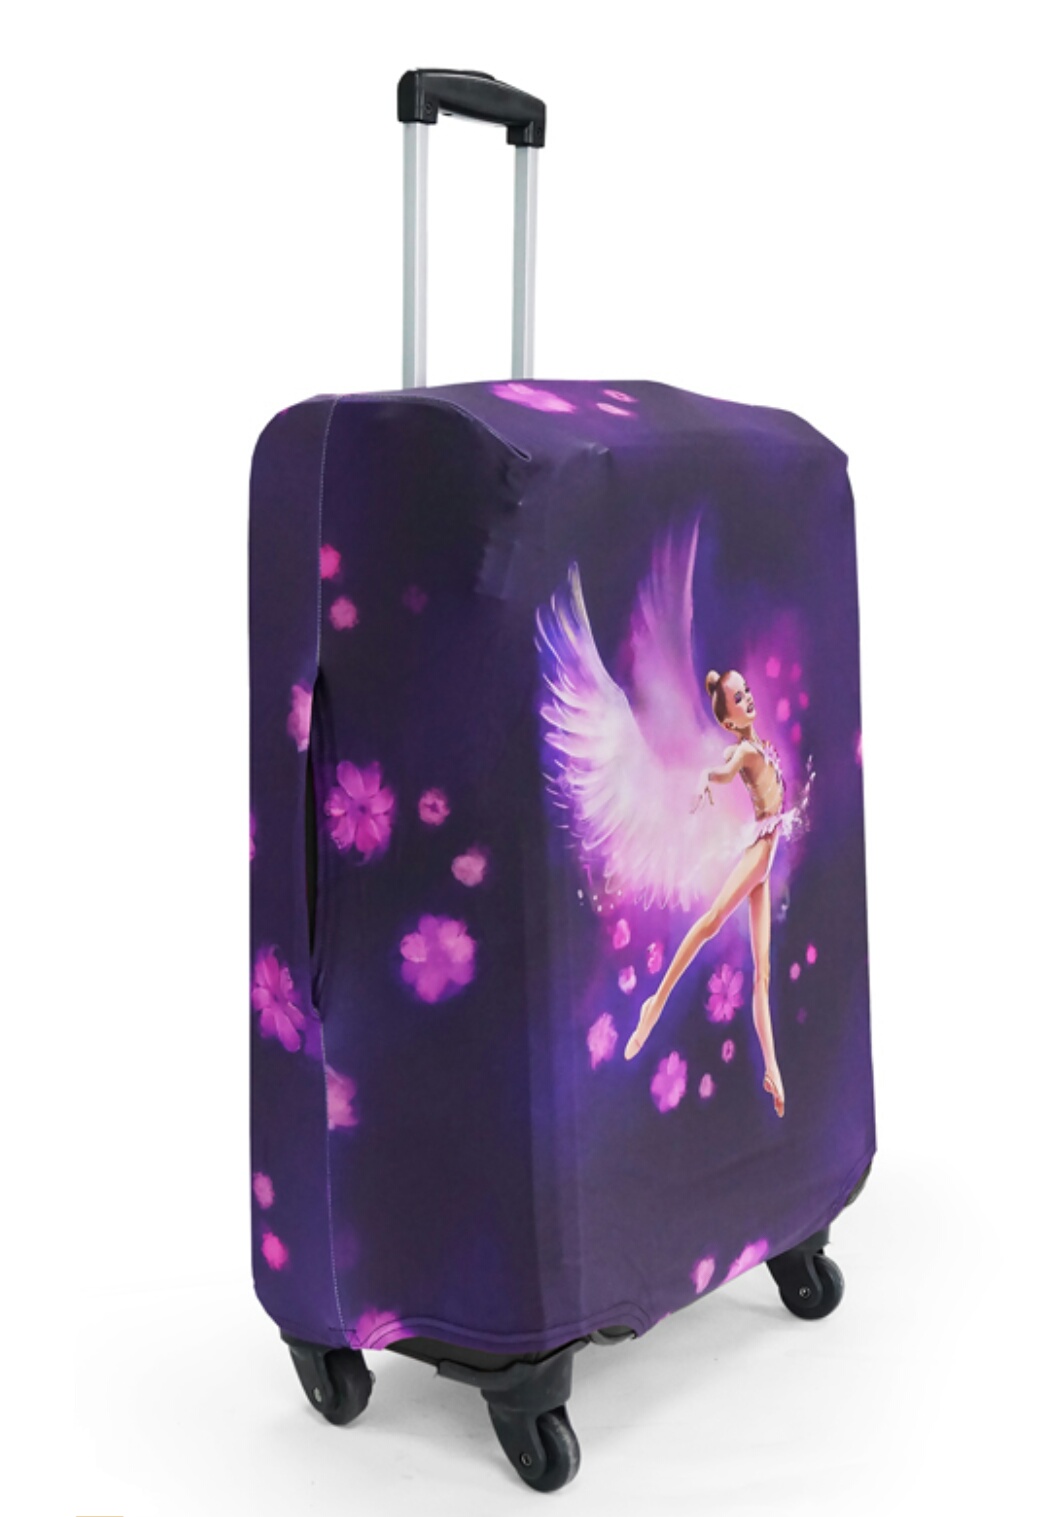 Как определить размер чехла чемодана?